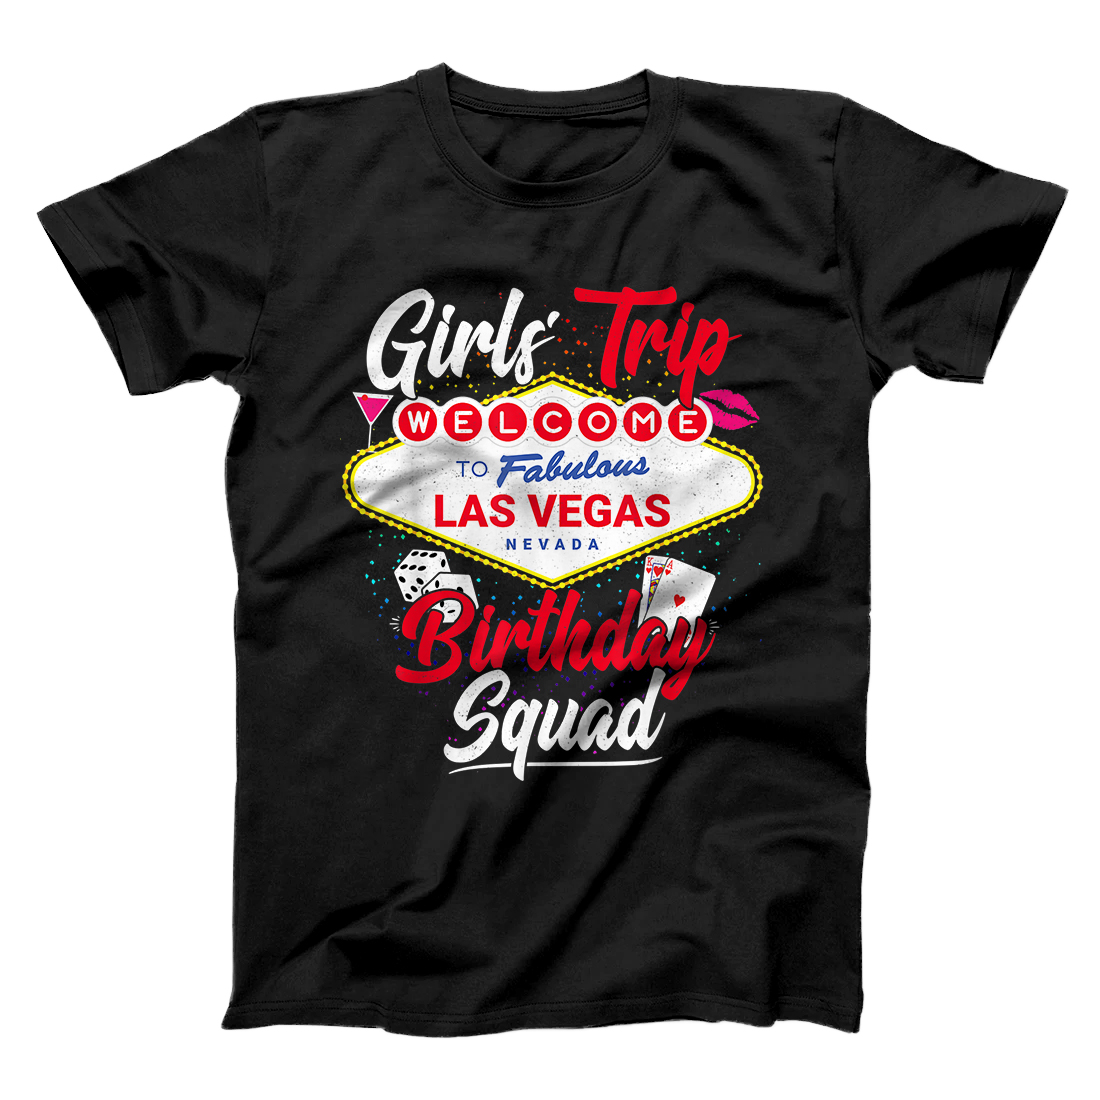 Personalized Las Vegas Birthday Party - Girls Trip - Vegas Birthday Squad T-Shirt